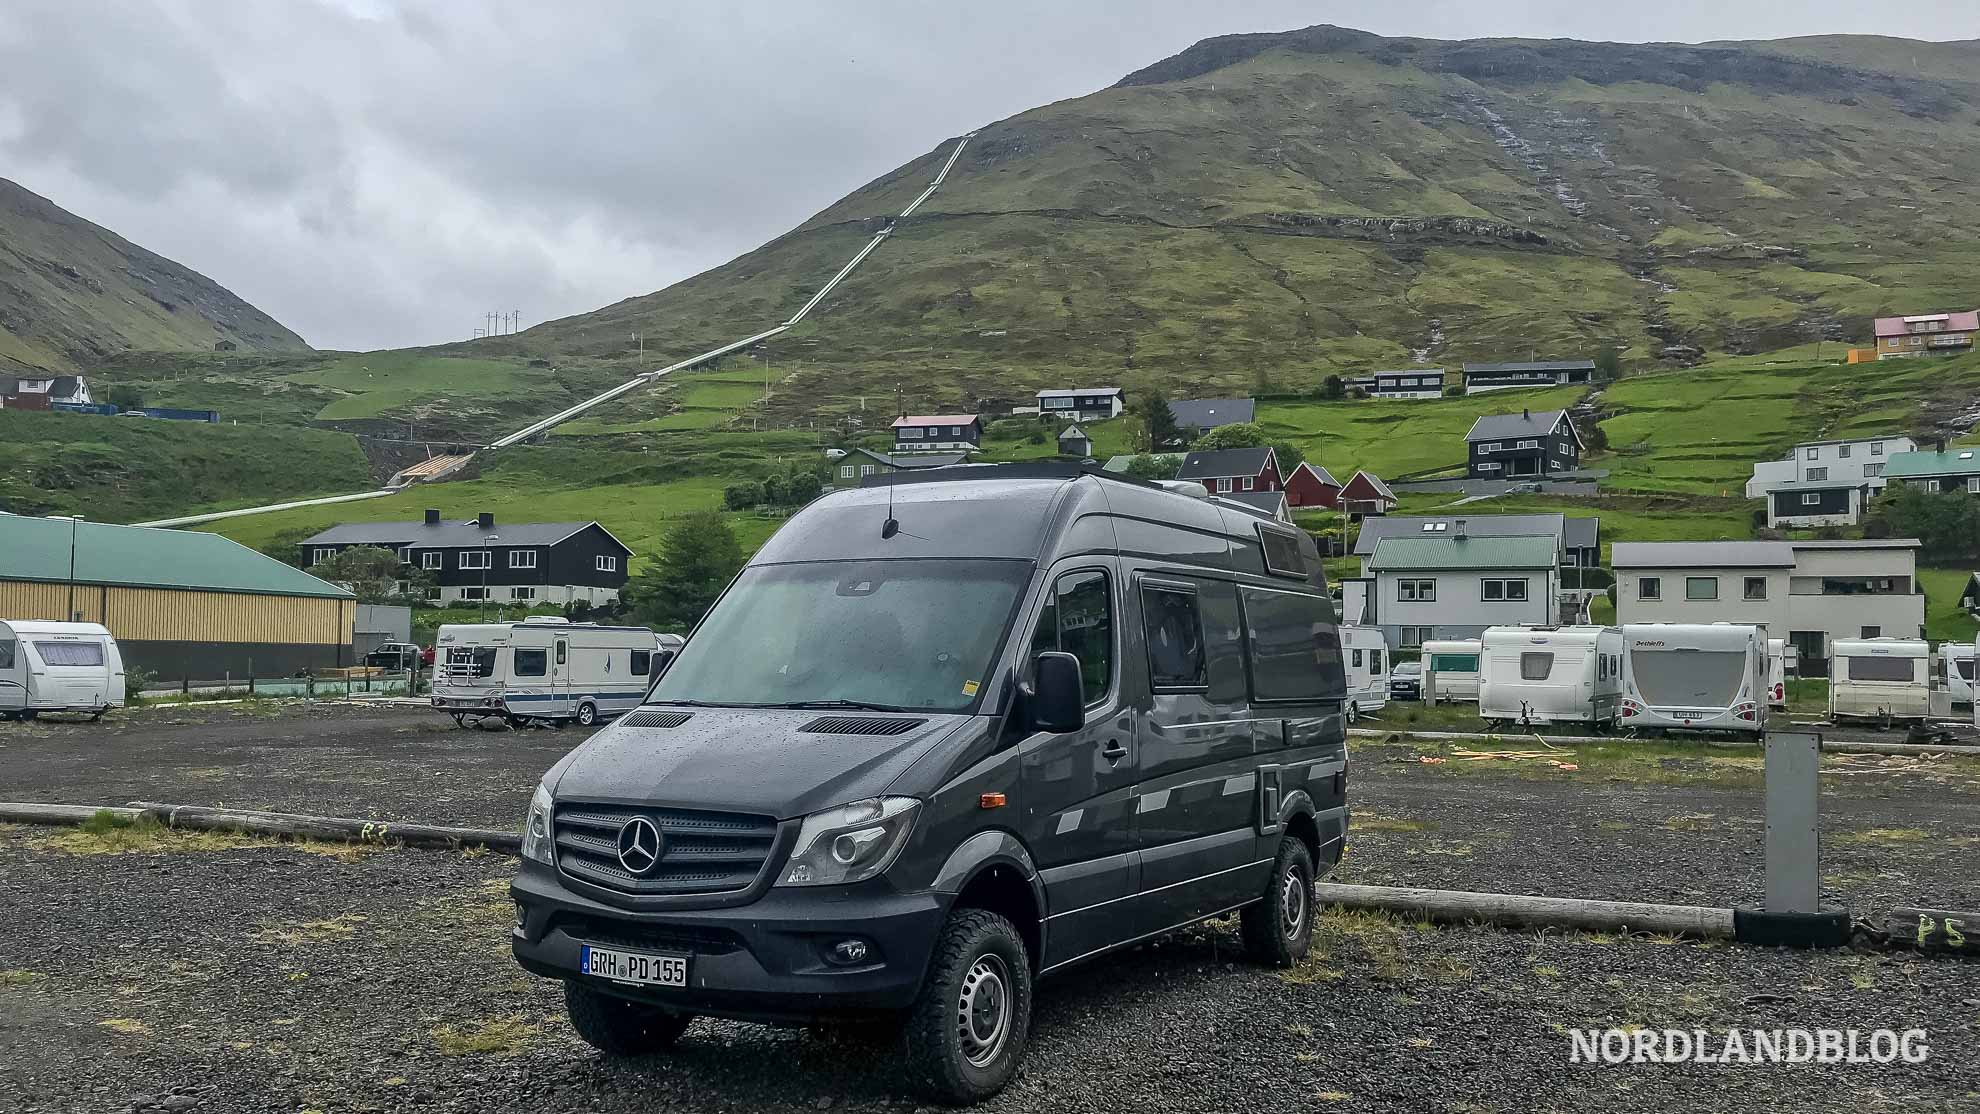 Kastenwagen auf dem Campingplatz Vestmanna Färöer Inseln Nordlandblog